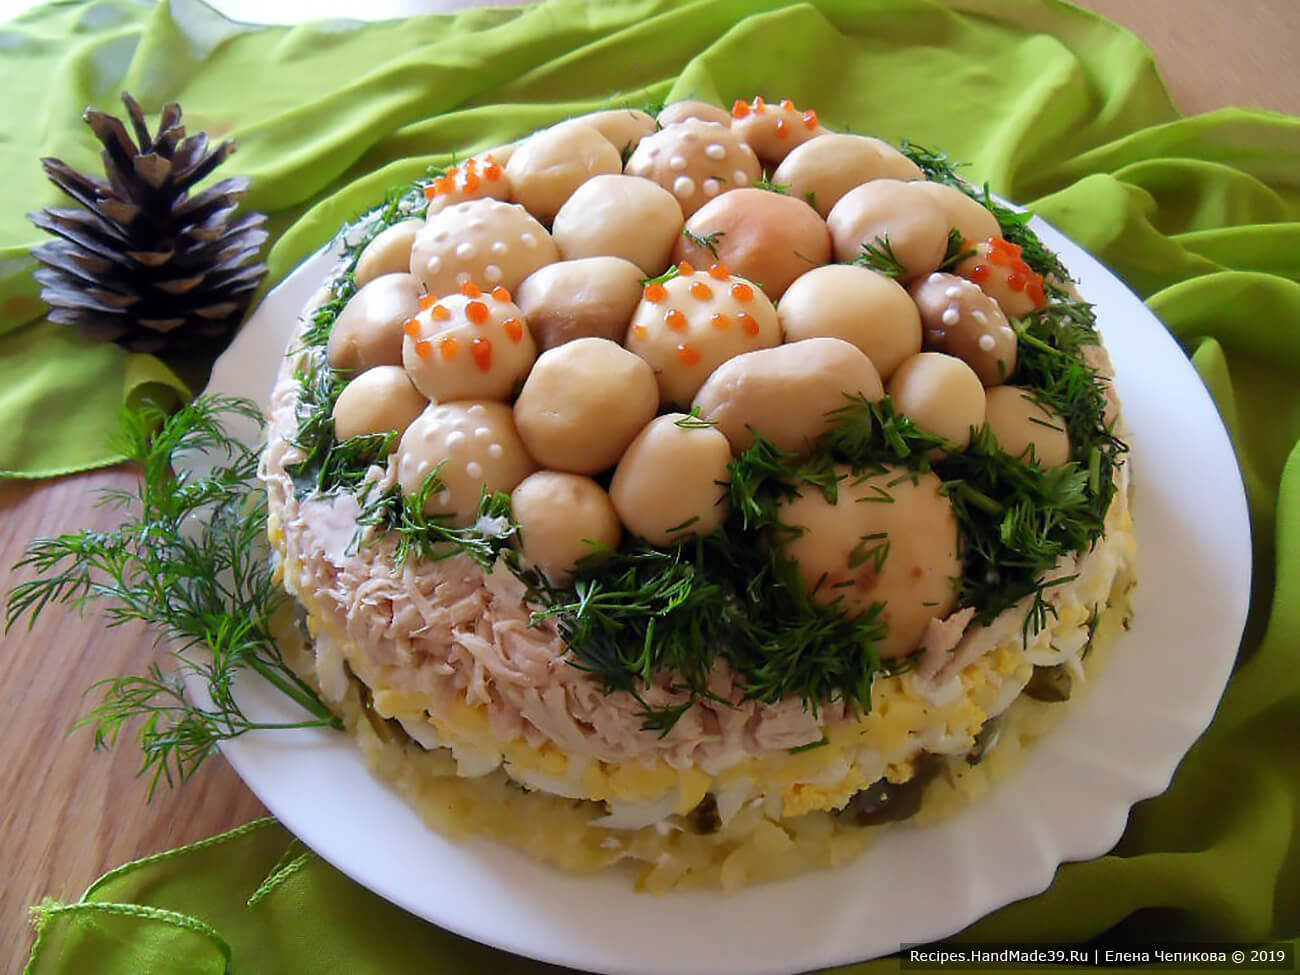 Украсить салат по своему усмотрению: например, нанести сметаной и кетчупом точечки на некоторые грибки. Добавить зелени. Приятного аппетита!